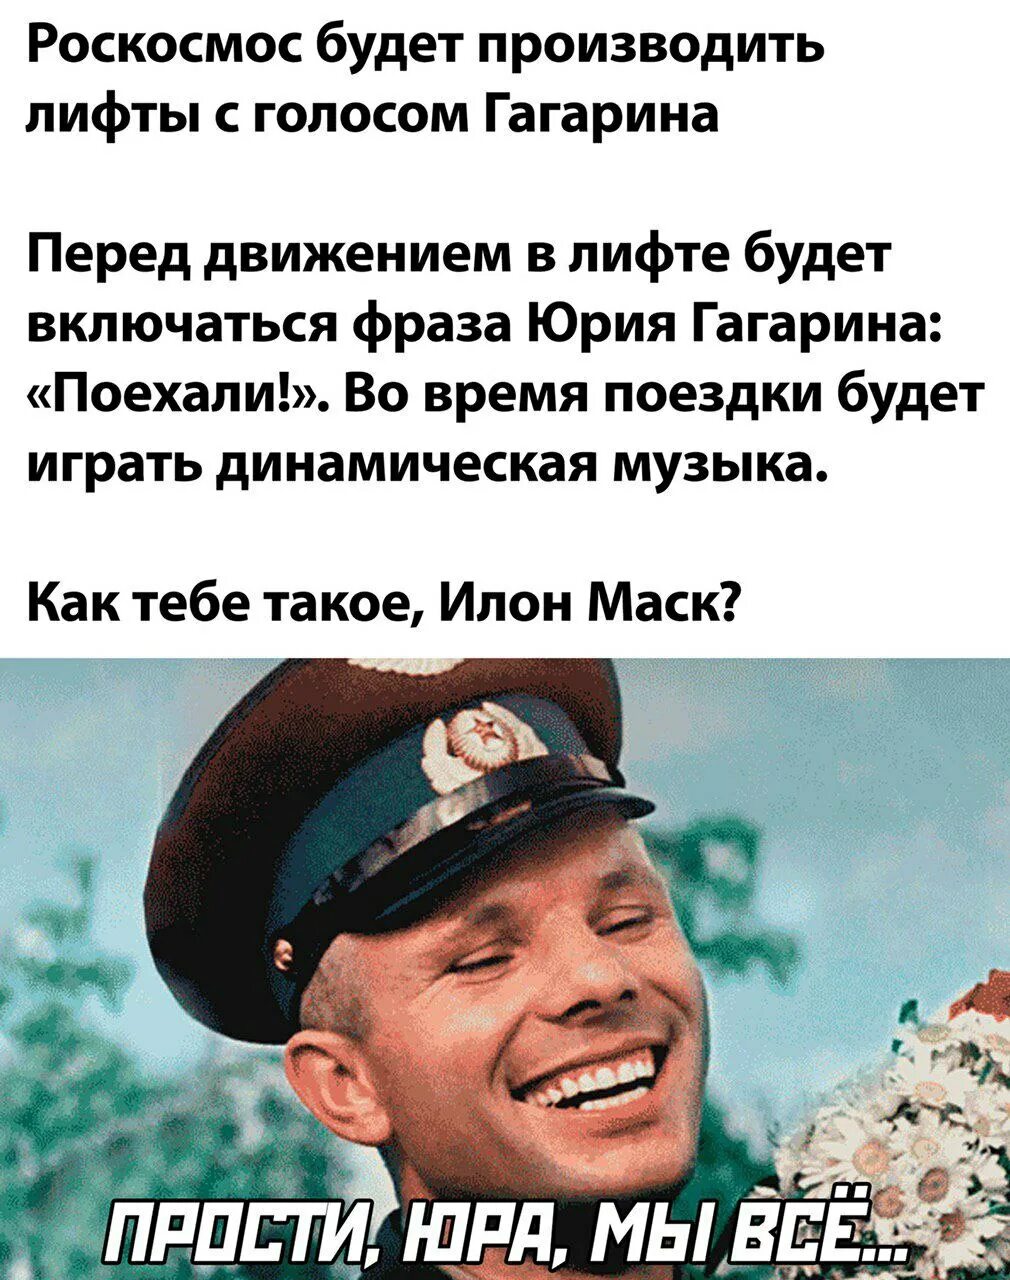 Фраза гагарина поехали. Голос Юрия Гагарина поехали. Приколы про Гагарина. Поехали фраза Юрия Гагарина. Знаменитая фраза Гагарина.